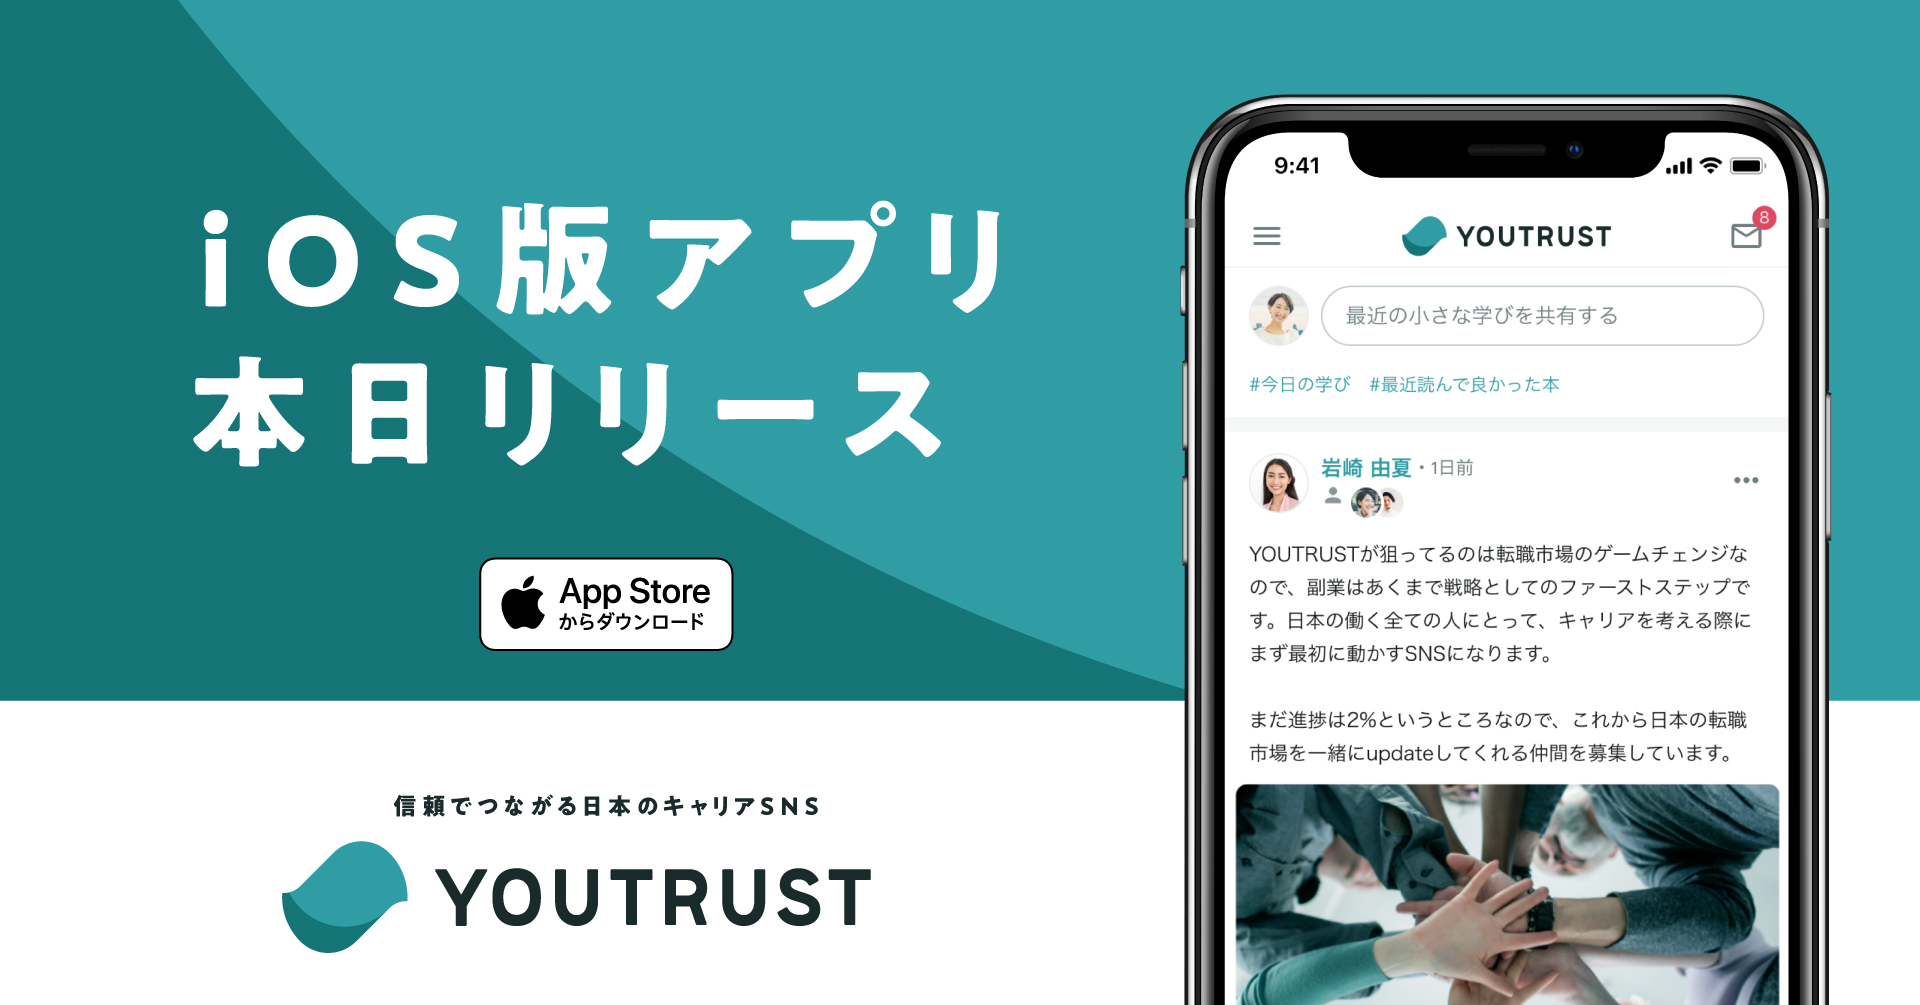 日本のキャリアSNS「YOUTRUST」がiOSアプリを正式リリース